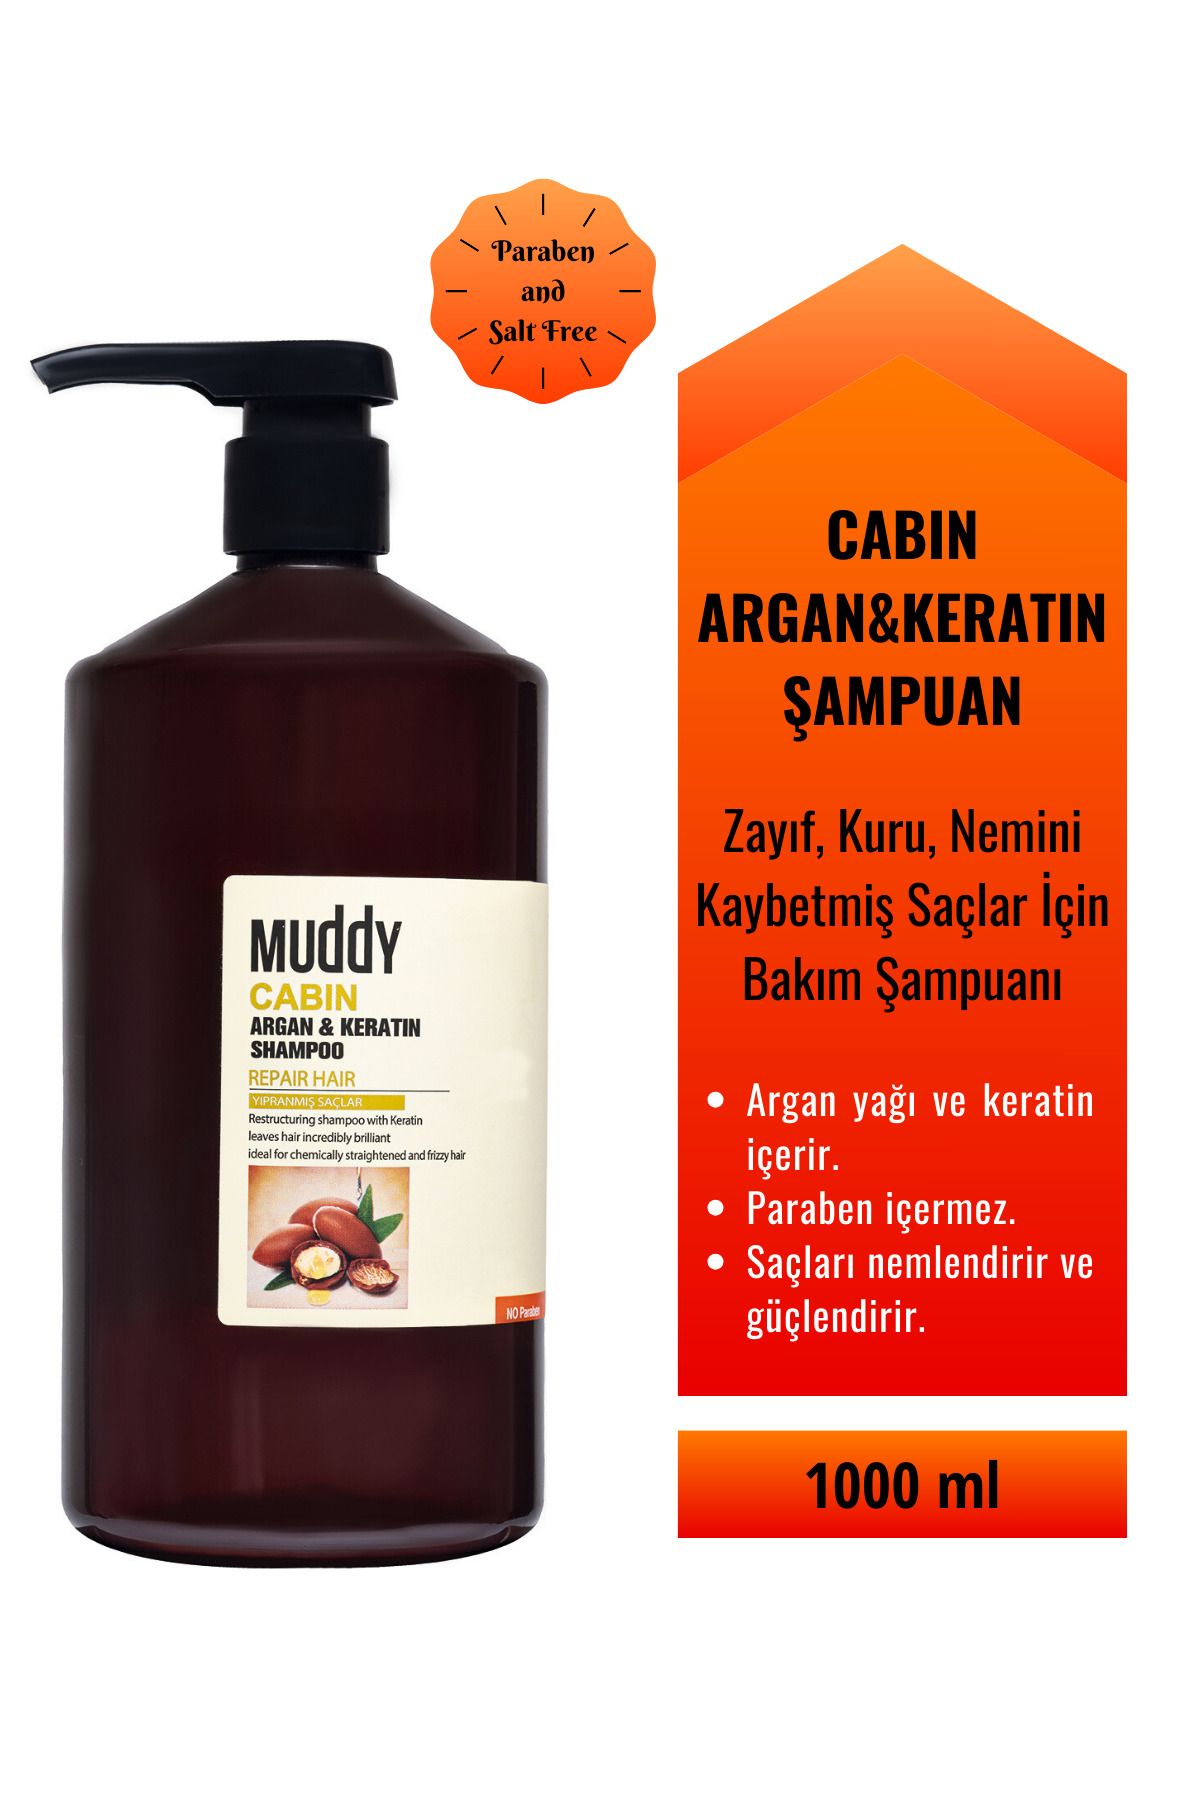 Muddy Zayıf Kuru Nemini Kaybetmiş Saçlara Cabın Argan&keratın Şampuan 1000 Ml